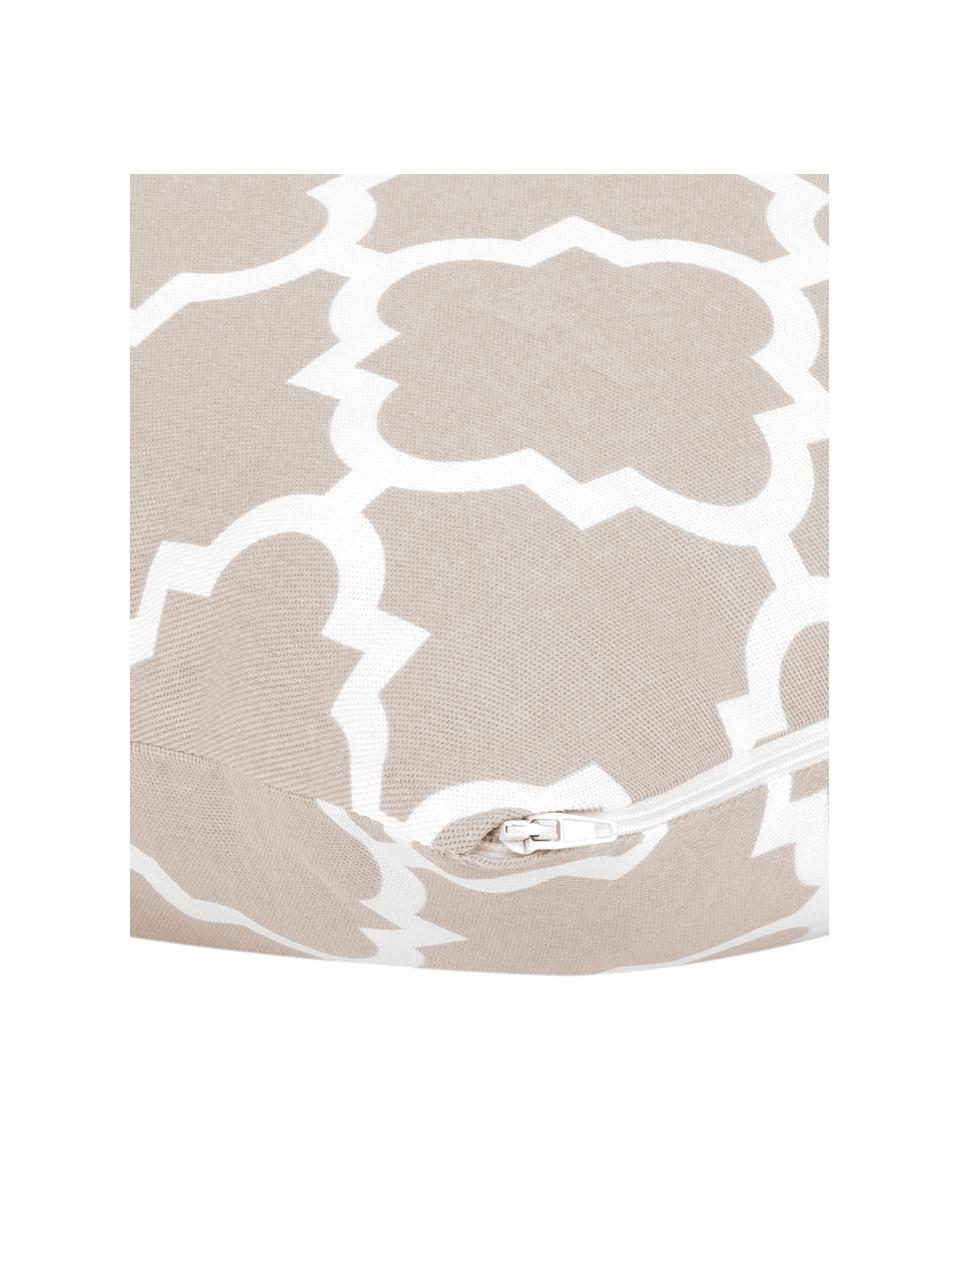 Kissenhülle Lana mit grafischem Muster, 100% Baumwolle, Beige, Weiß, B 30 x L 50 cm